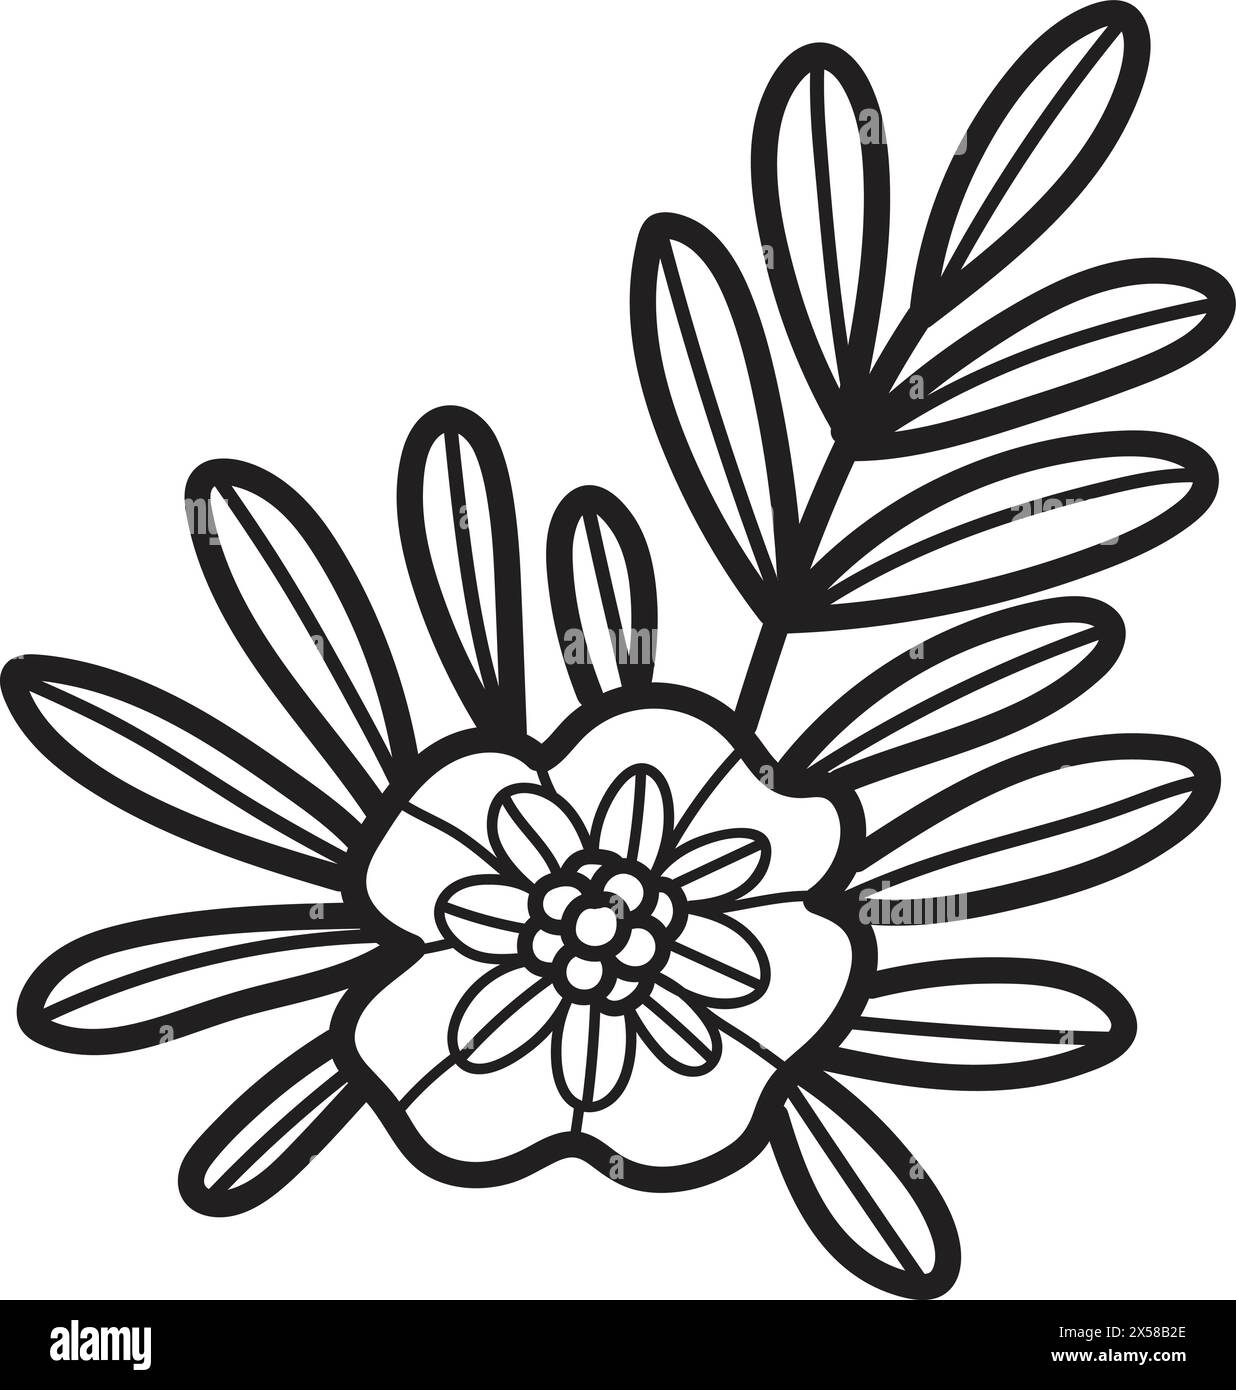 Un disegno bianco e nero di un fiore con una foglia. Il fiore è piccolo e ha un centro bianco. Il disegno ha uno stile semplice ed elegante Illustrazione Vettoriale